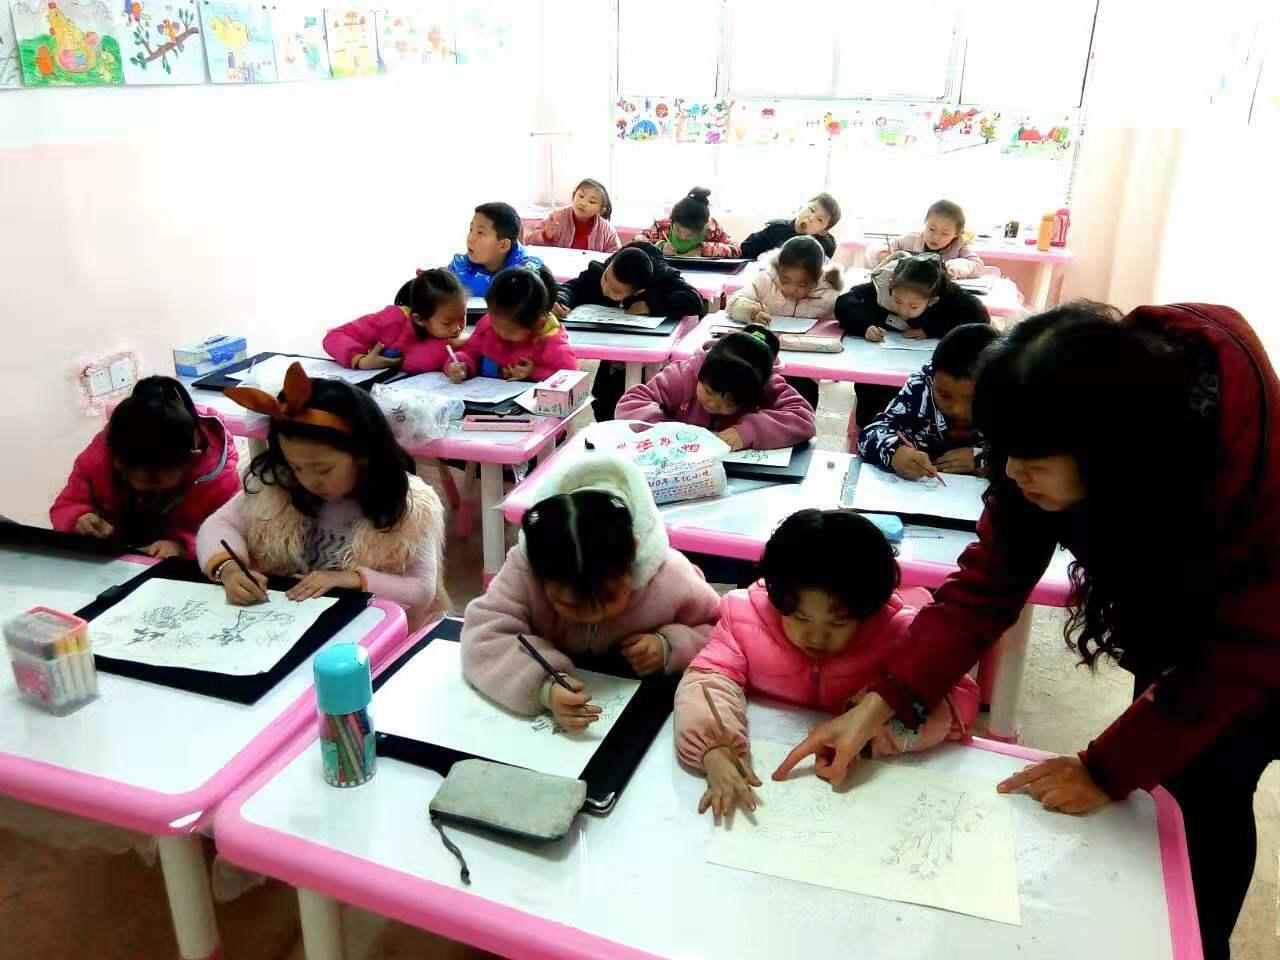 老师正在给圆梦画室一部幼小班的学生辅导作业